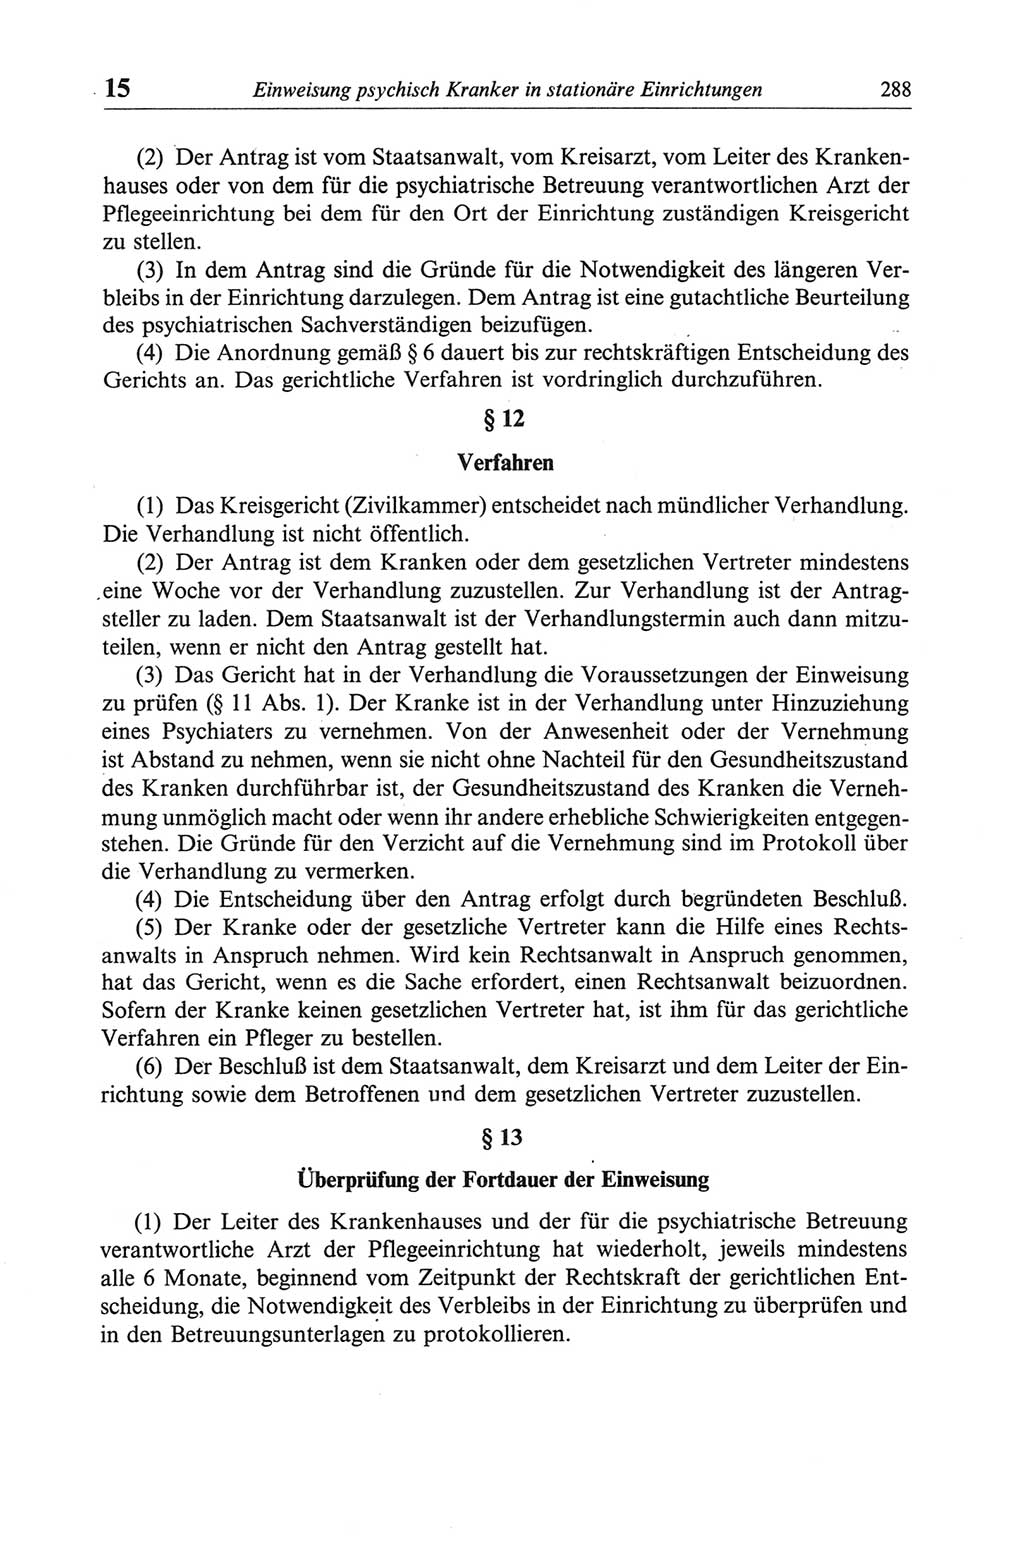 Strafgesetzbuch (StGB) der Deutschen Demokratischen Republik (DDR) und angrenzende Gesetze und Bestimmungen 1968, Seite 288 (StGB Ges. Best. DDR 1968, S. 288)